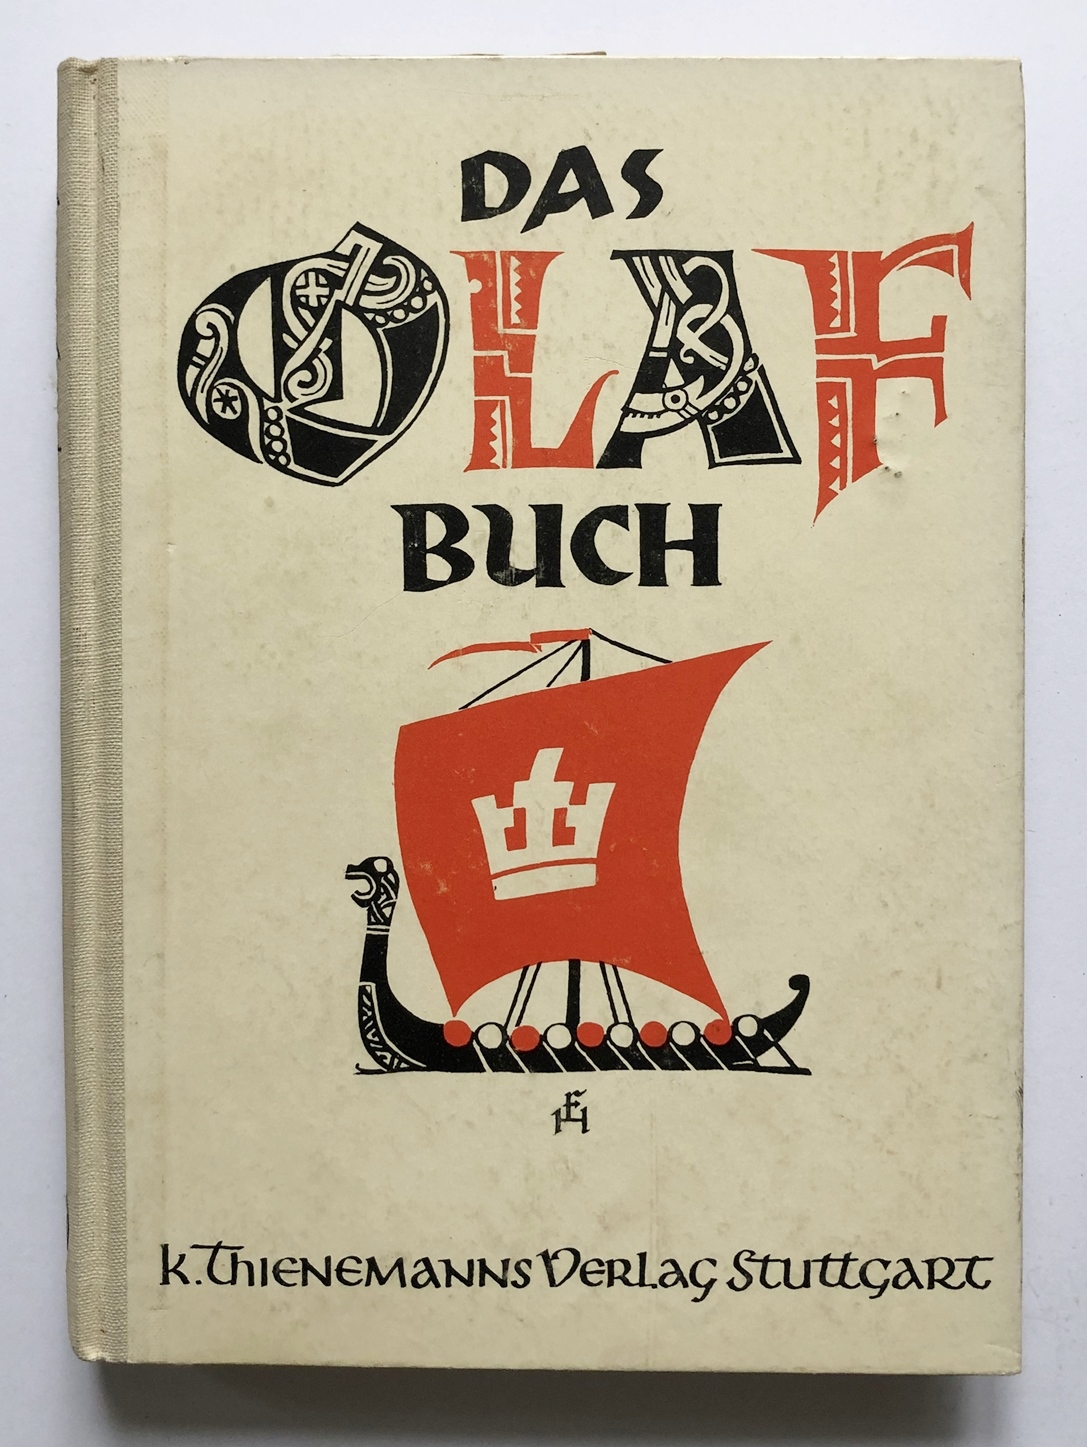 Das Olafbuch.